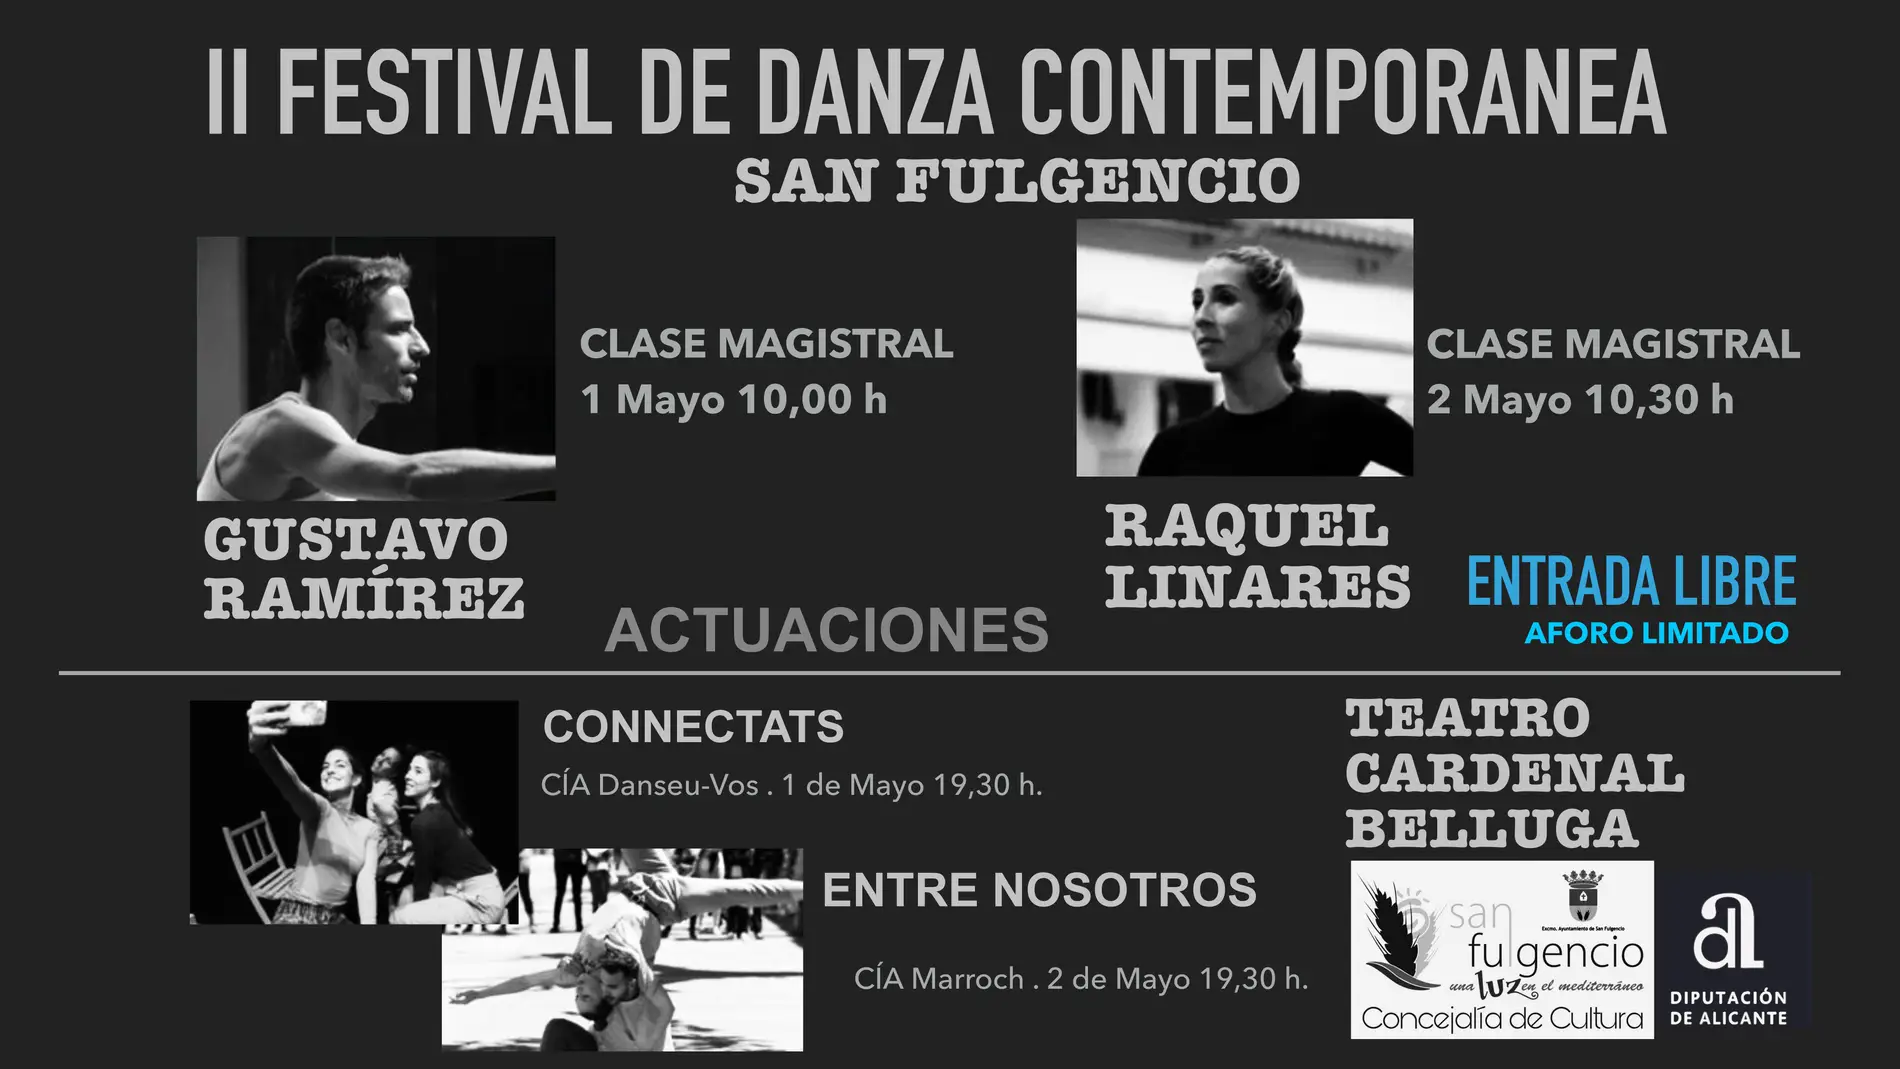 Gustavo Ramírez y Raquel Linares actuarán en el teatro Cardenal Belluga, además de impartir dos clases magistrales, los días 1 y 2 de mayo 